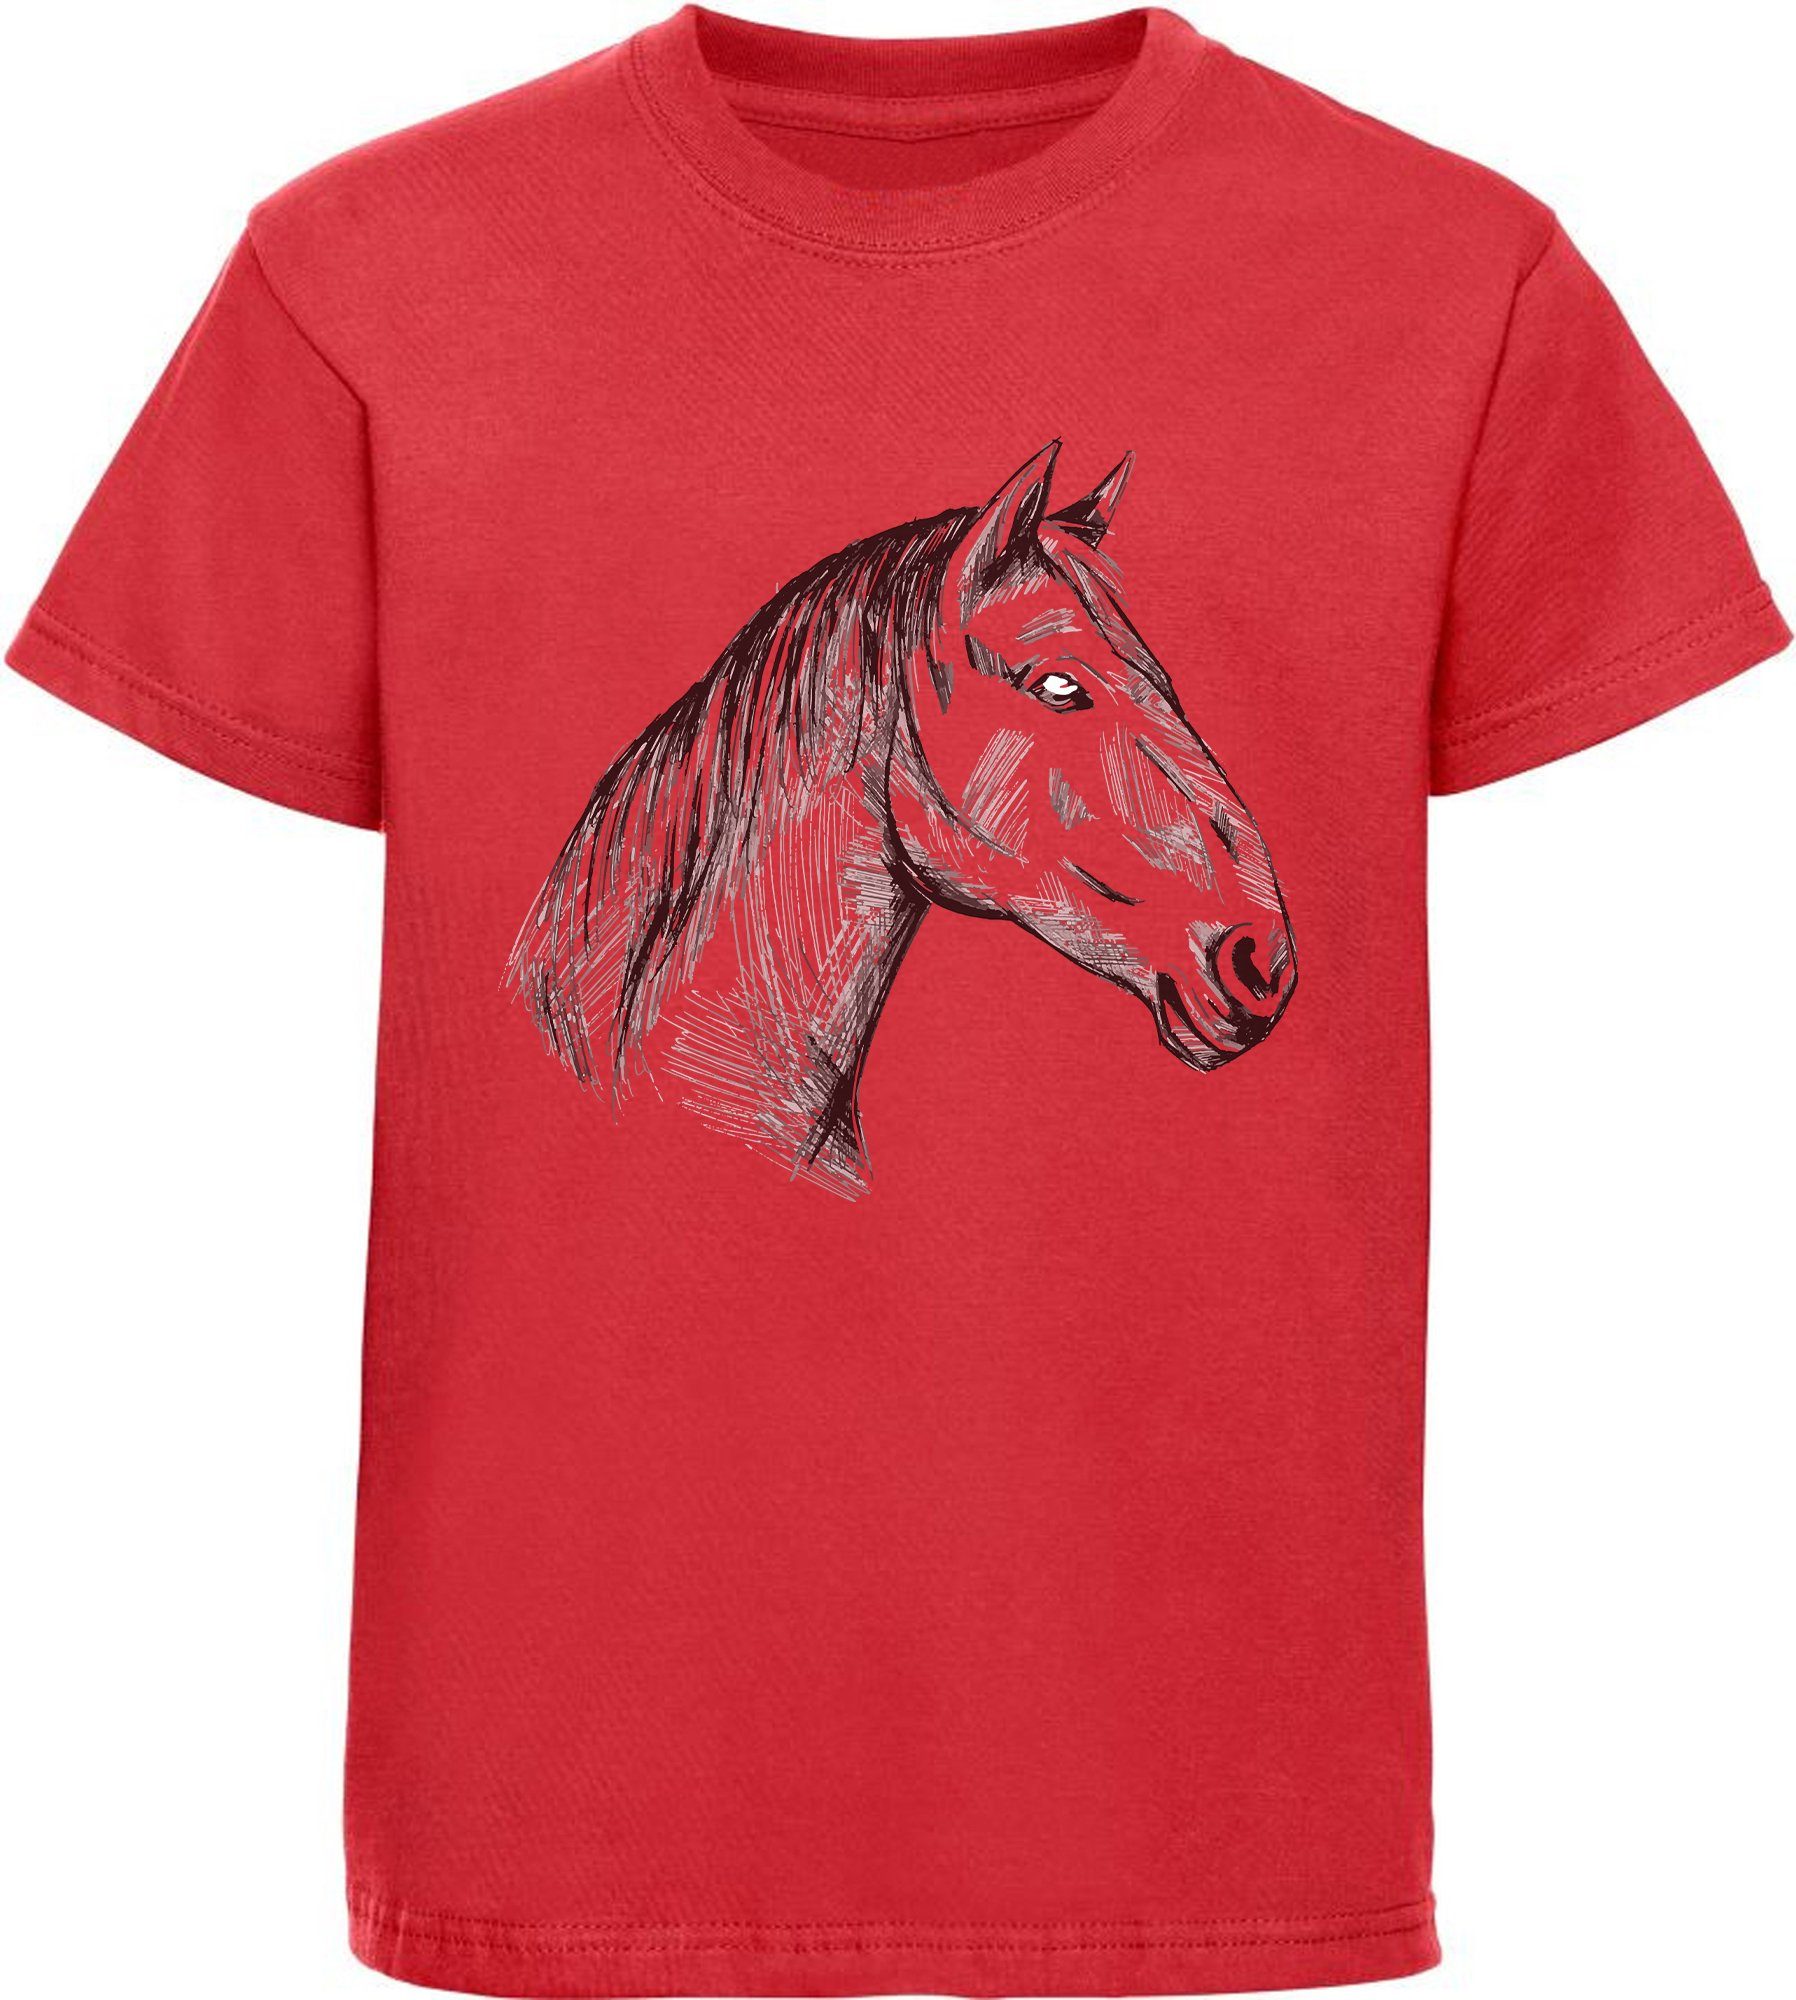 MyDesign24 Print-Shirt bedrucktes Mädchen T-Shirt gezeichneter Pferdekopf Baumwollshirt mit Aufdruck, i142 rot